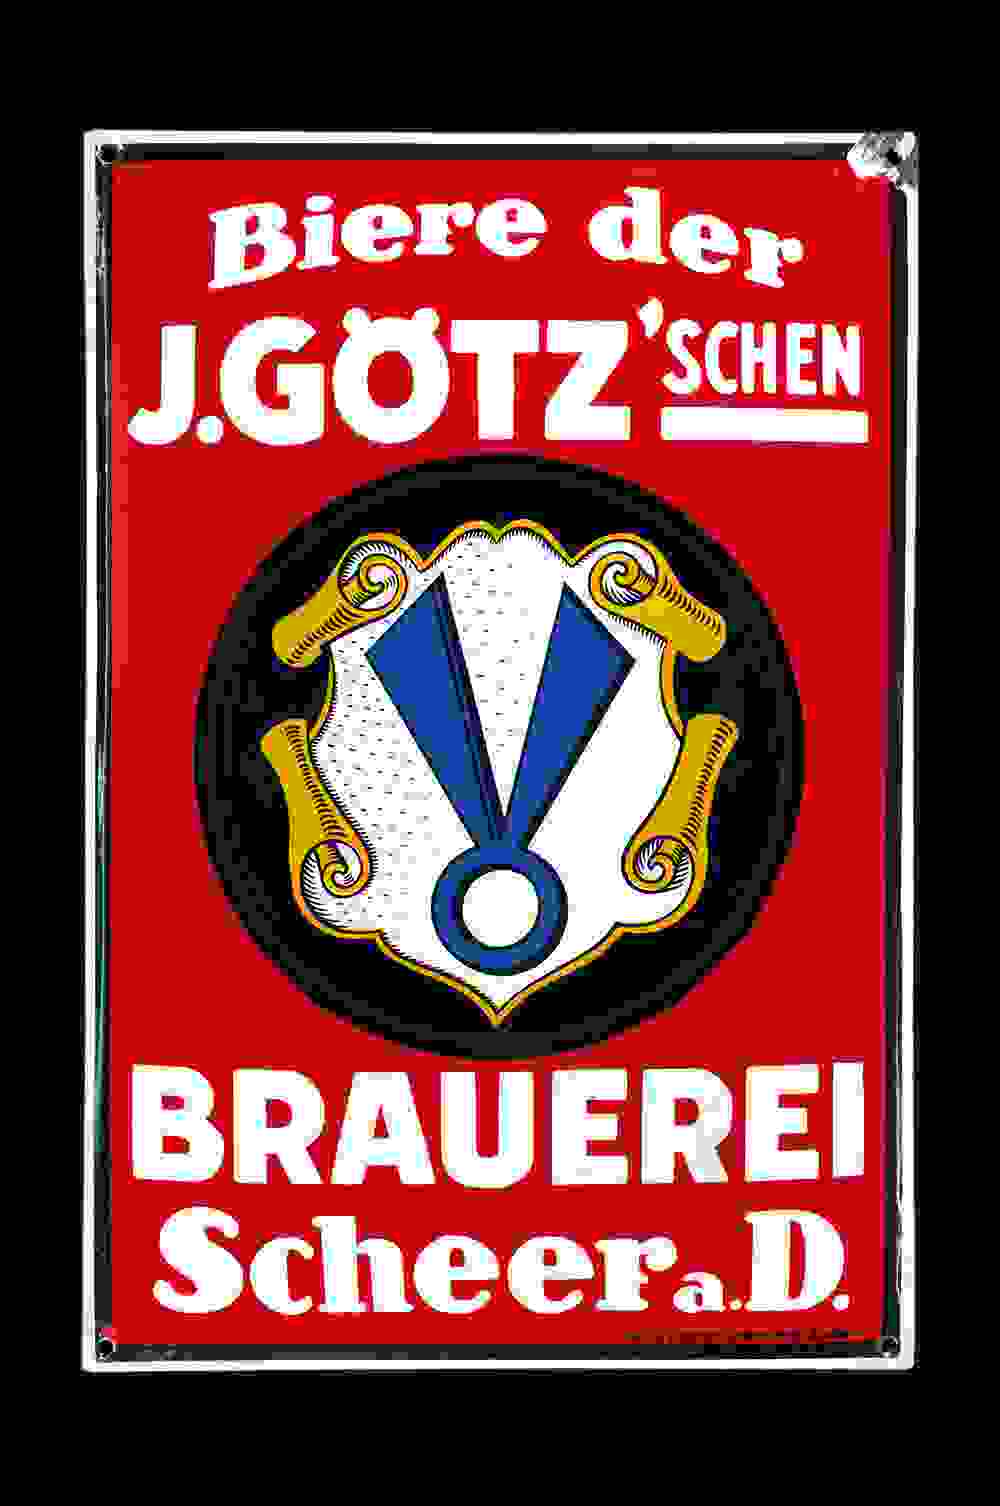 Biere der J. Götz'schen Brauerei 